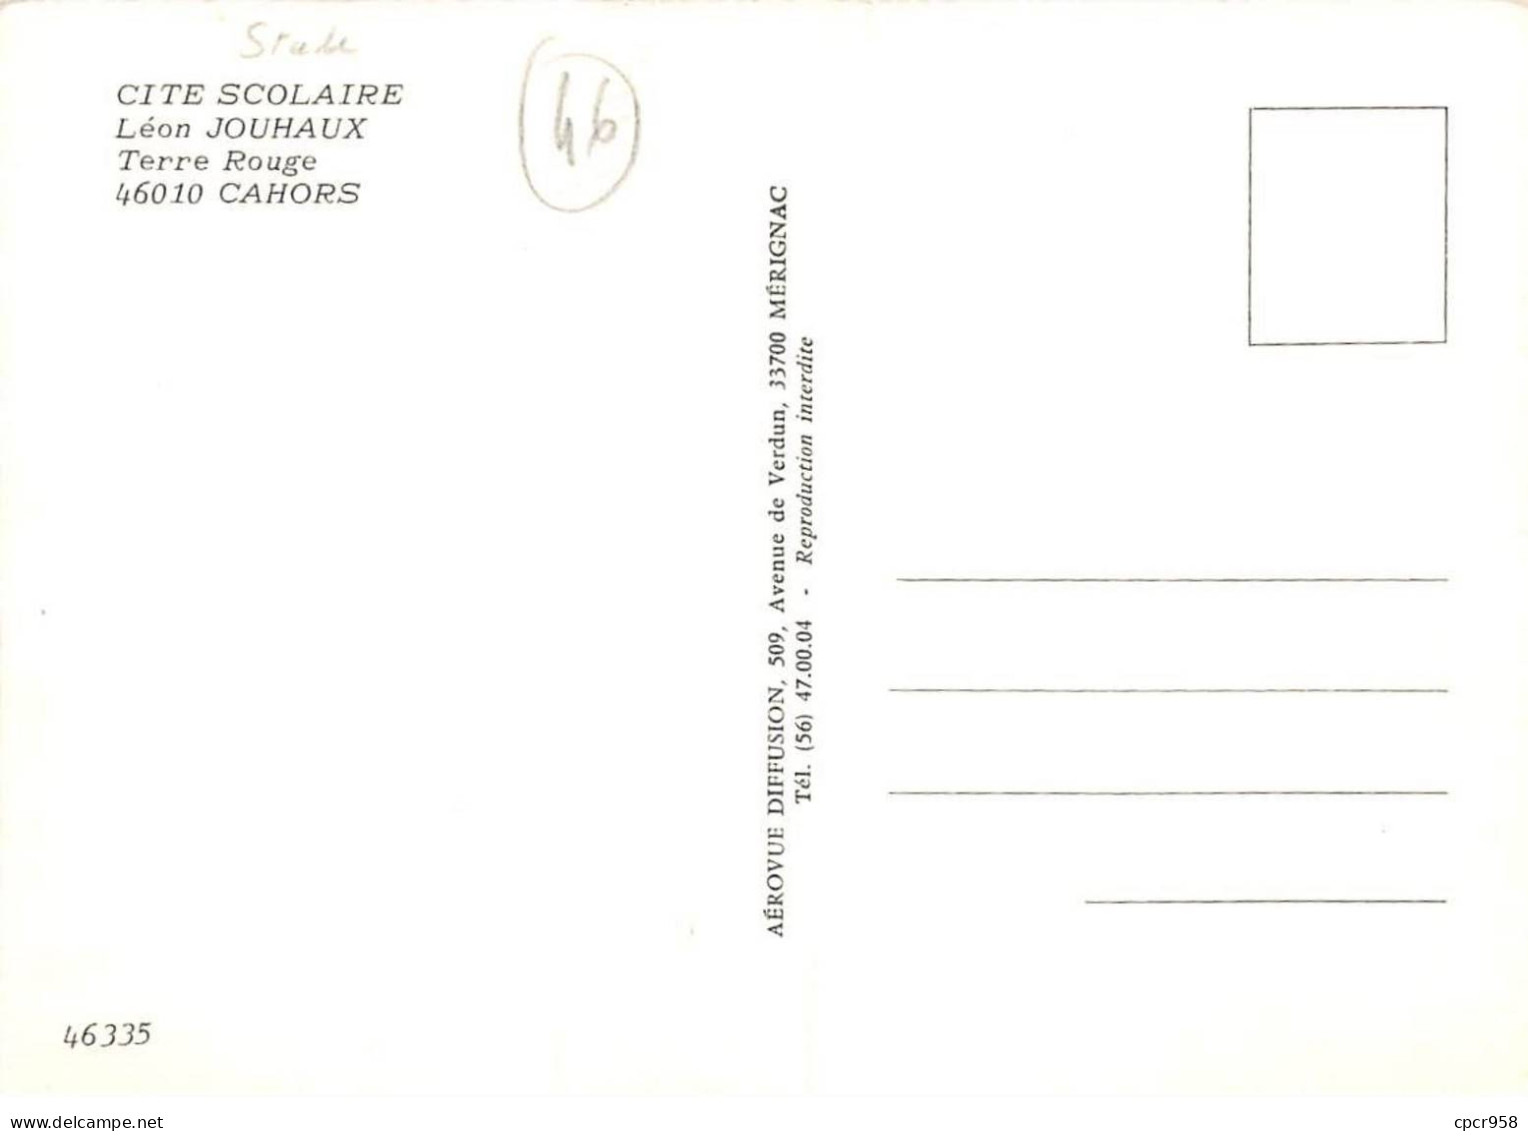 46 - SAN61591 - CAHORS - Cité Scolaire Leon Jouhaux - Terre Rouge - Stade - Aérovue Diffusion - CPSM 10x15 Cm - Cahors